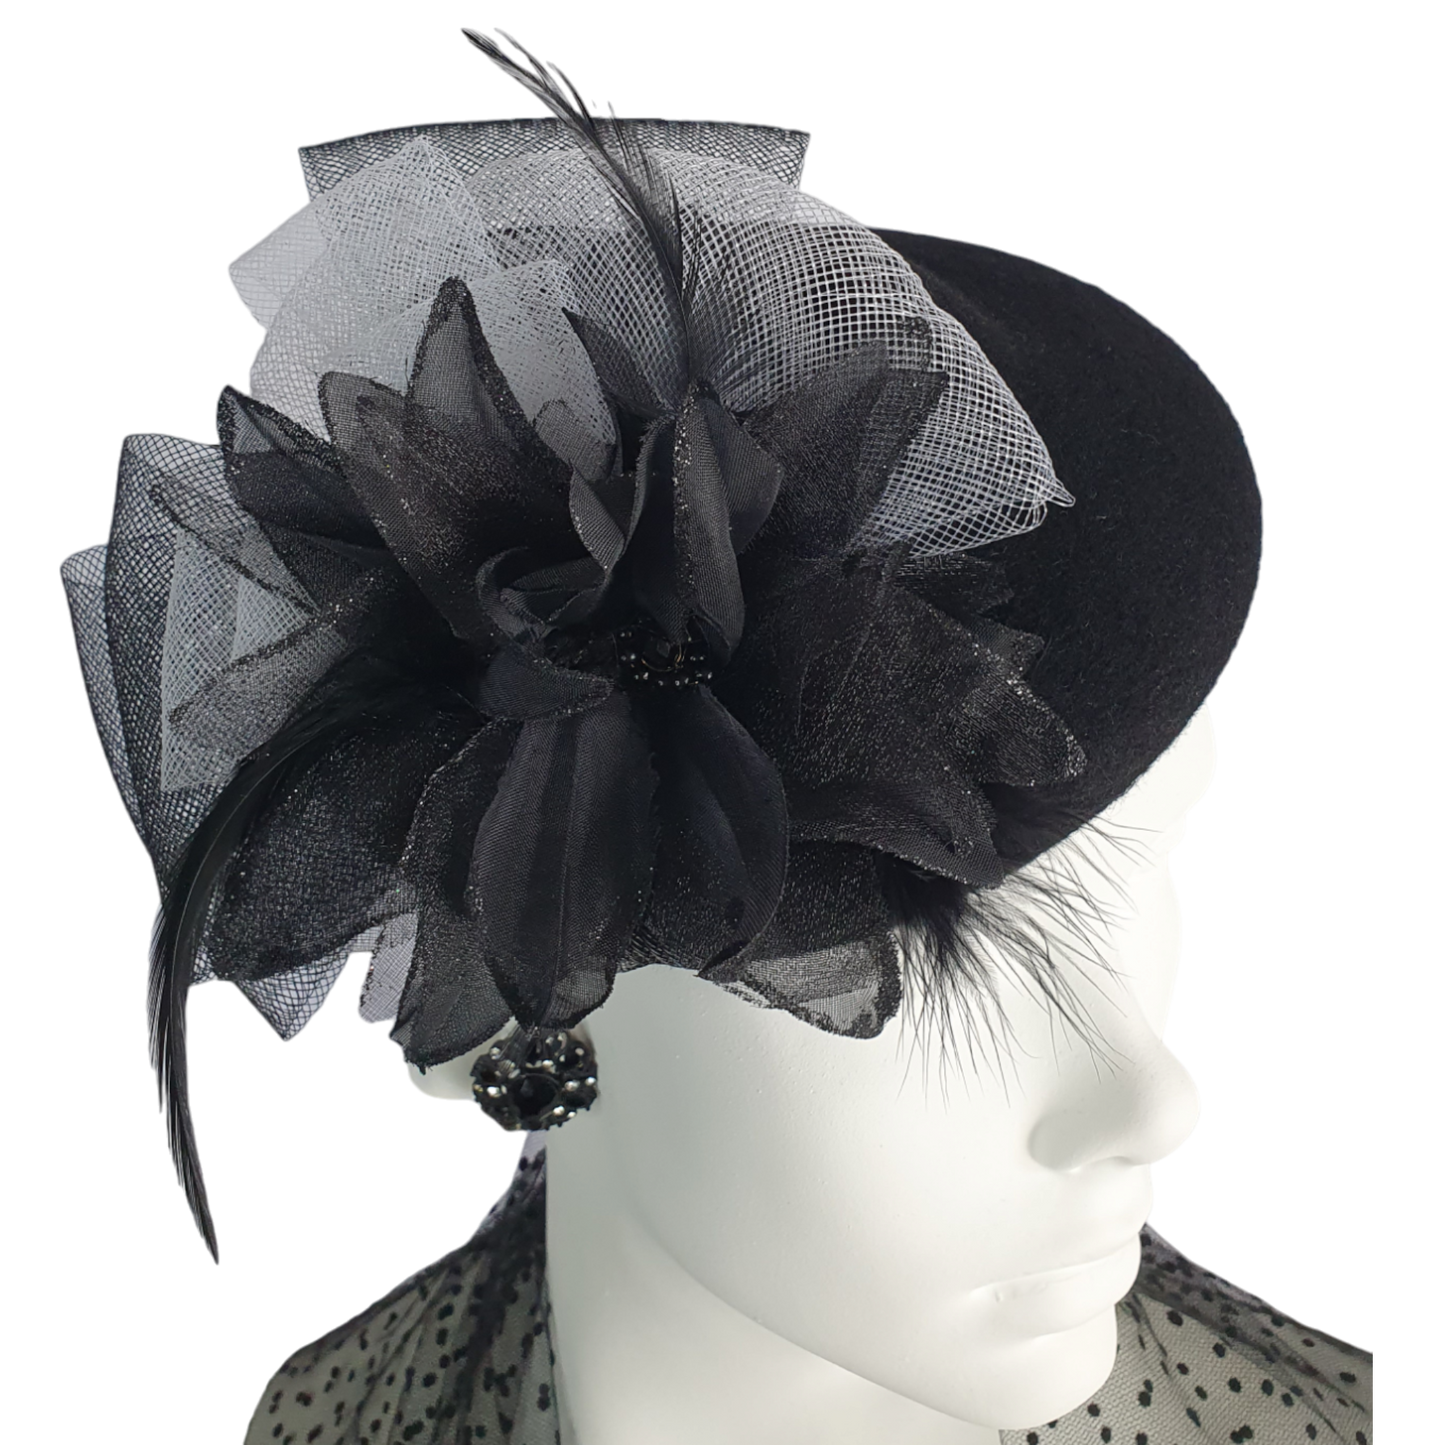 Handgemaakt Fascinator van zwart vilt met crinoline bloem met hanenveren, elegante hoofdtooi voor dames, perfect voor speciale gelegenheden